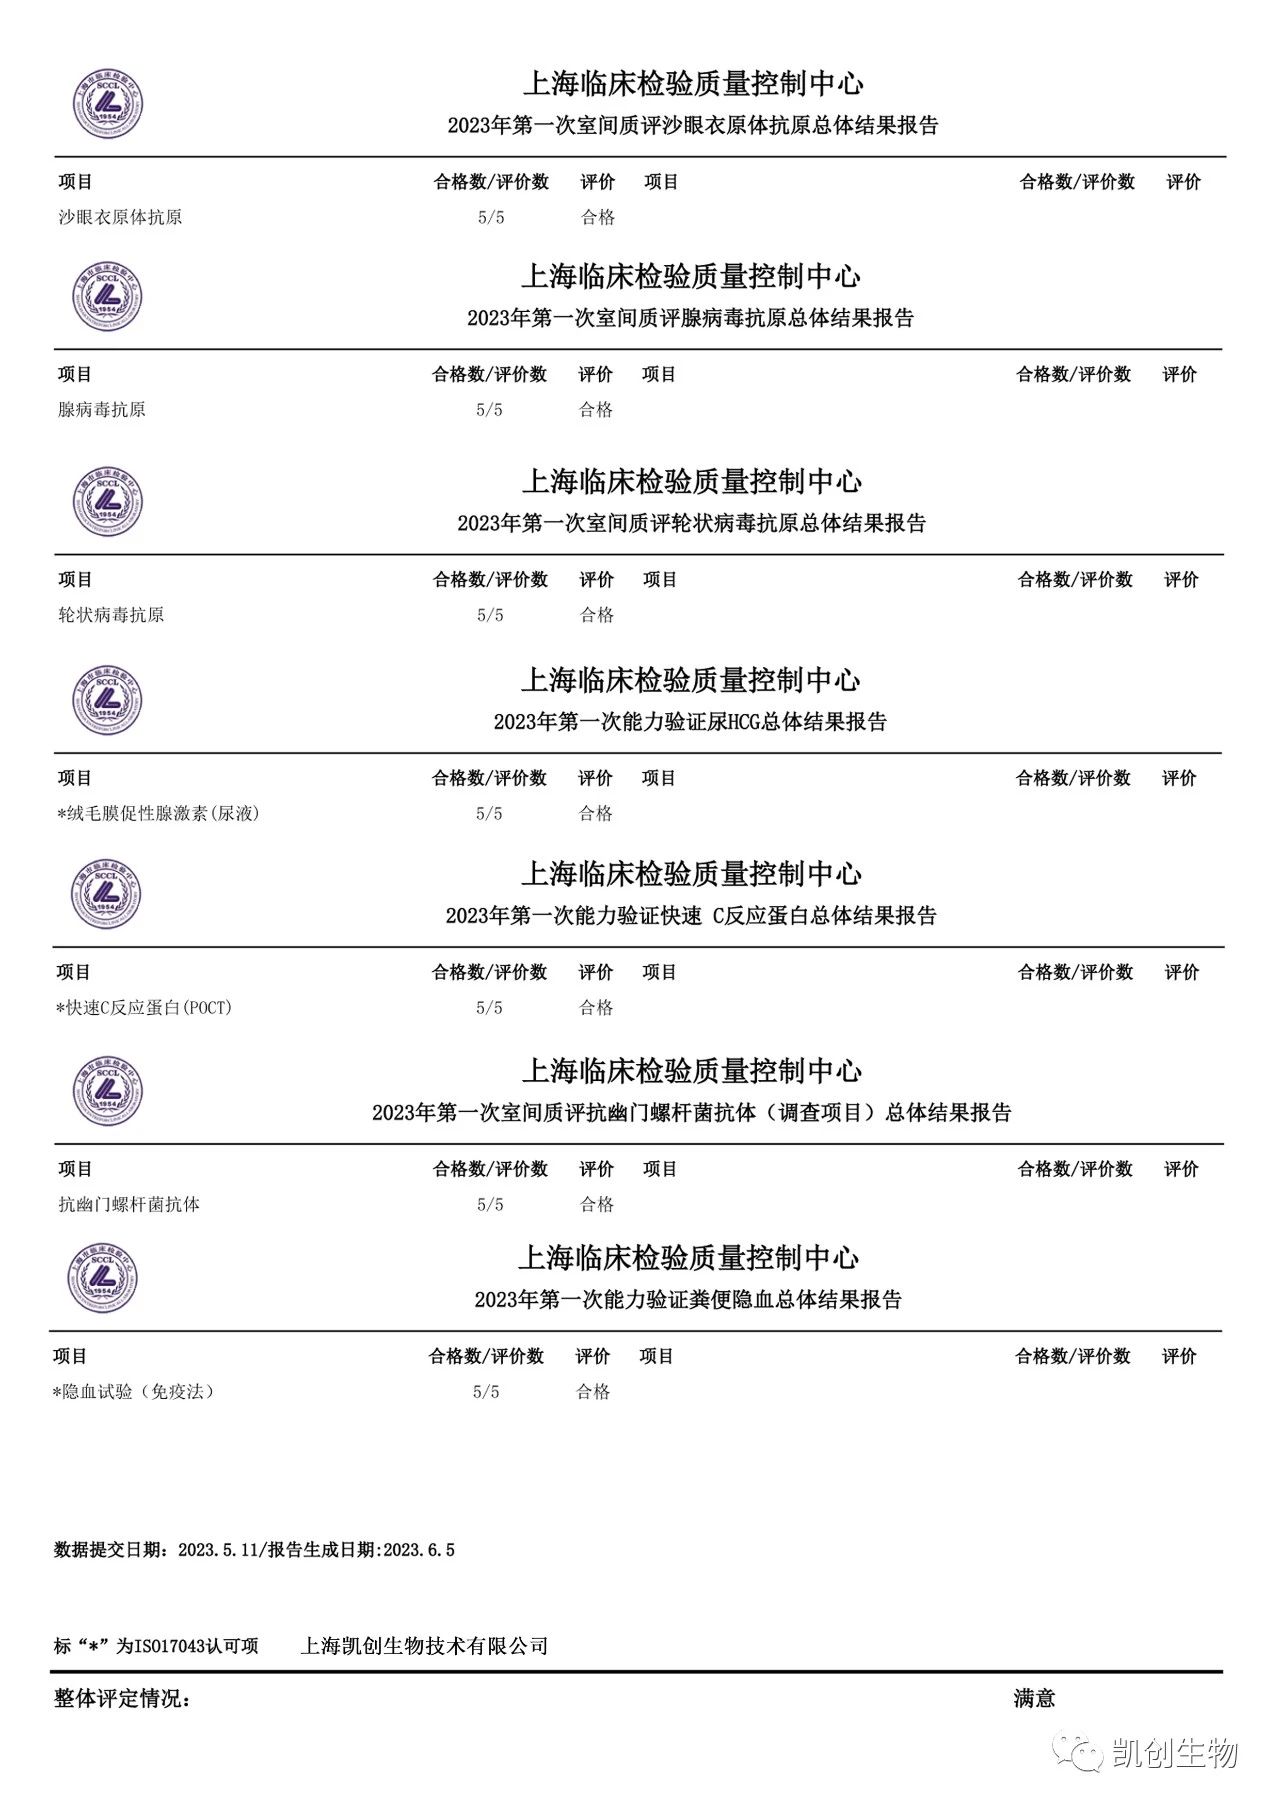 双色球开奖结果生物各项目合格通过2023年上海临检中心第一次室间质评